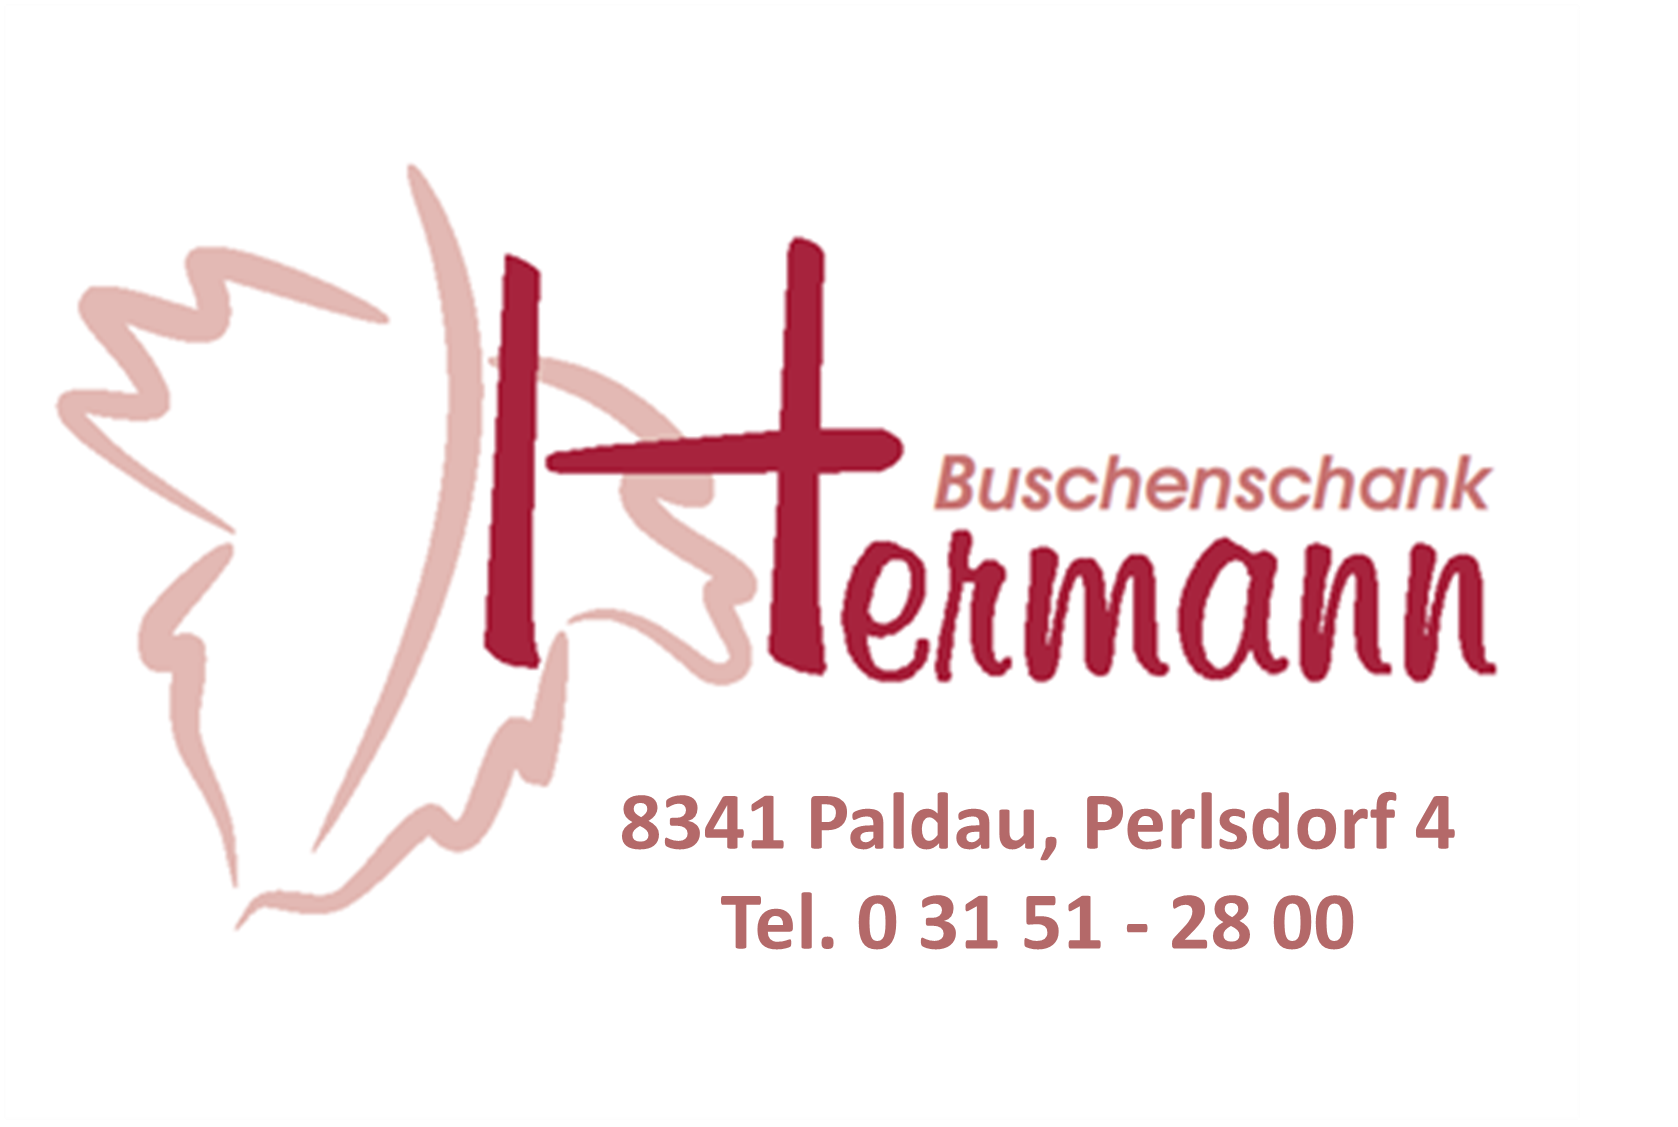 Buschenschank Hermann 0